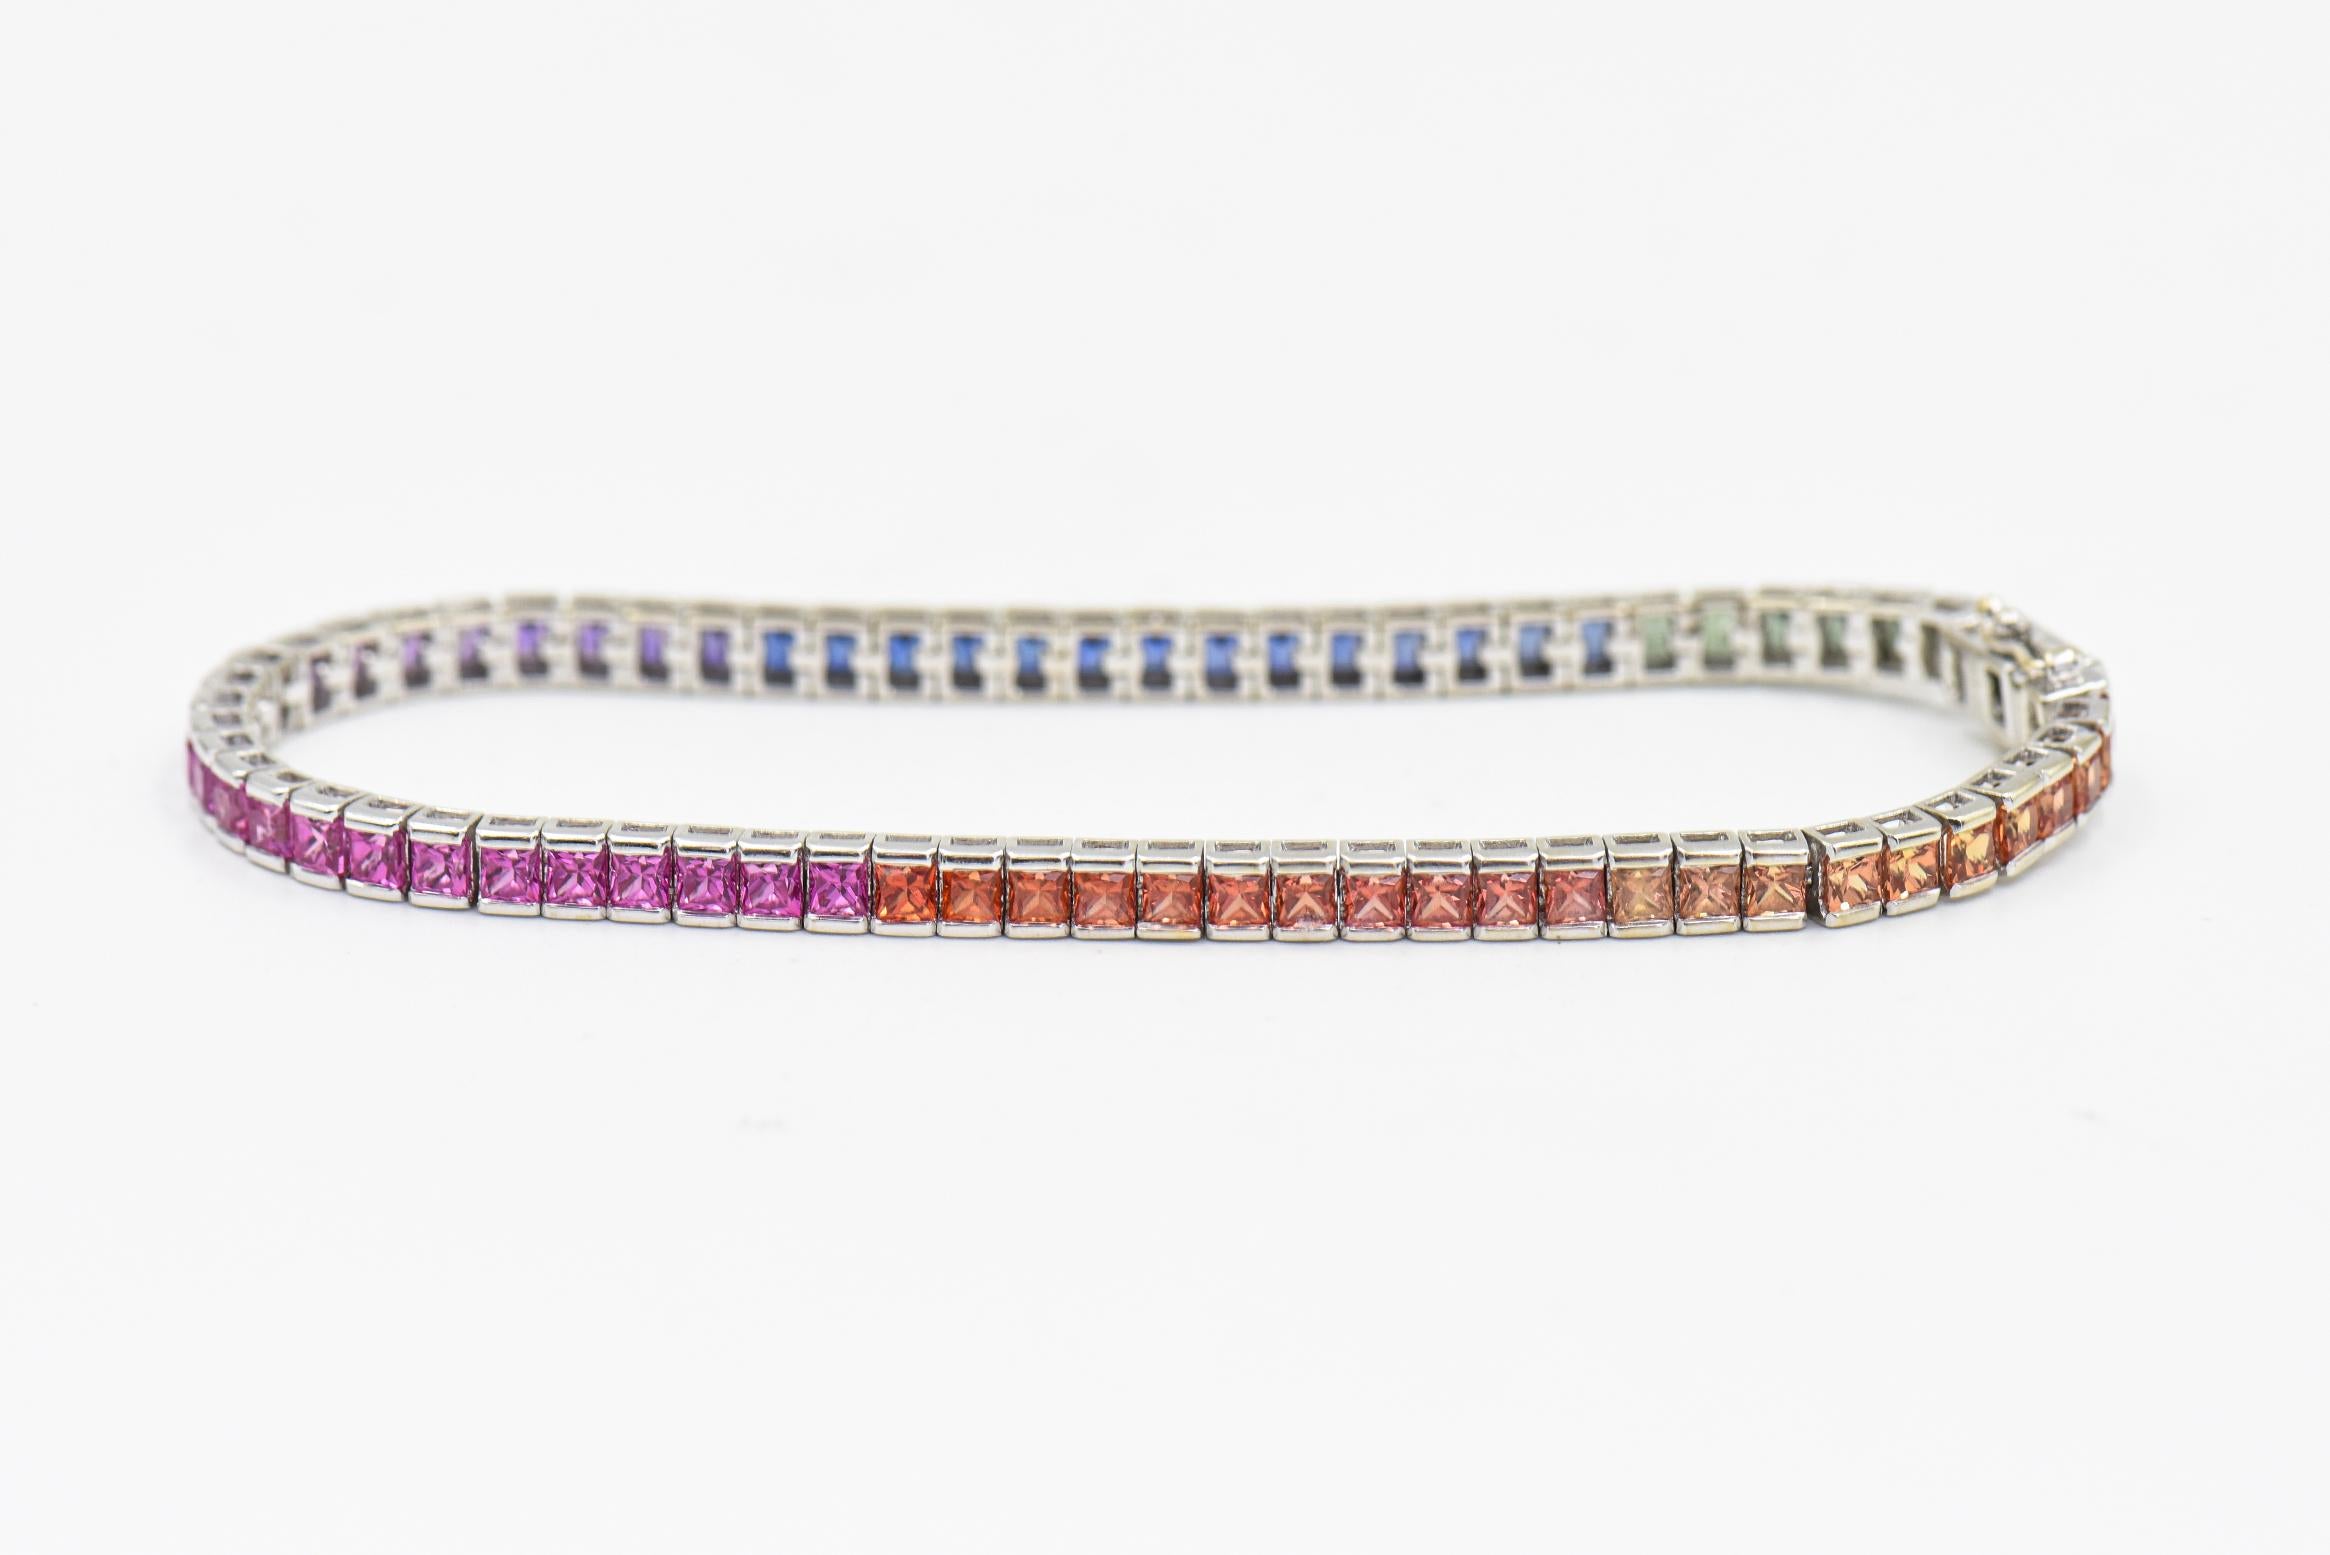 Dieses farbenfrohe Armband enthält 69 mehrfarbige Saphire im Prinzessschliff mit einem geschätzten Gesamtgewicht von 6,90 Karat.  Die Farben reichen von einem hellen Orange bis zu einem dunkleren Orange, von Rosa bis Lila und von Blau bis Grün.  Sie